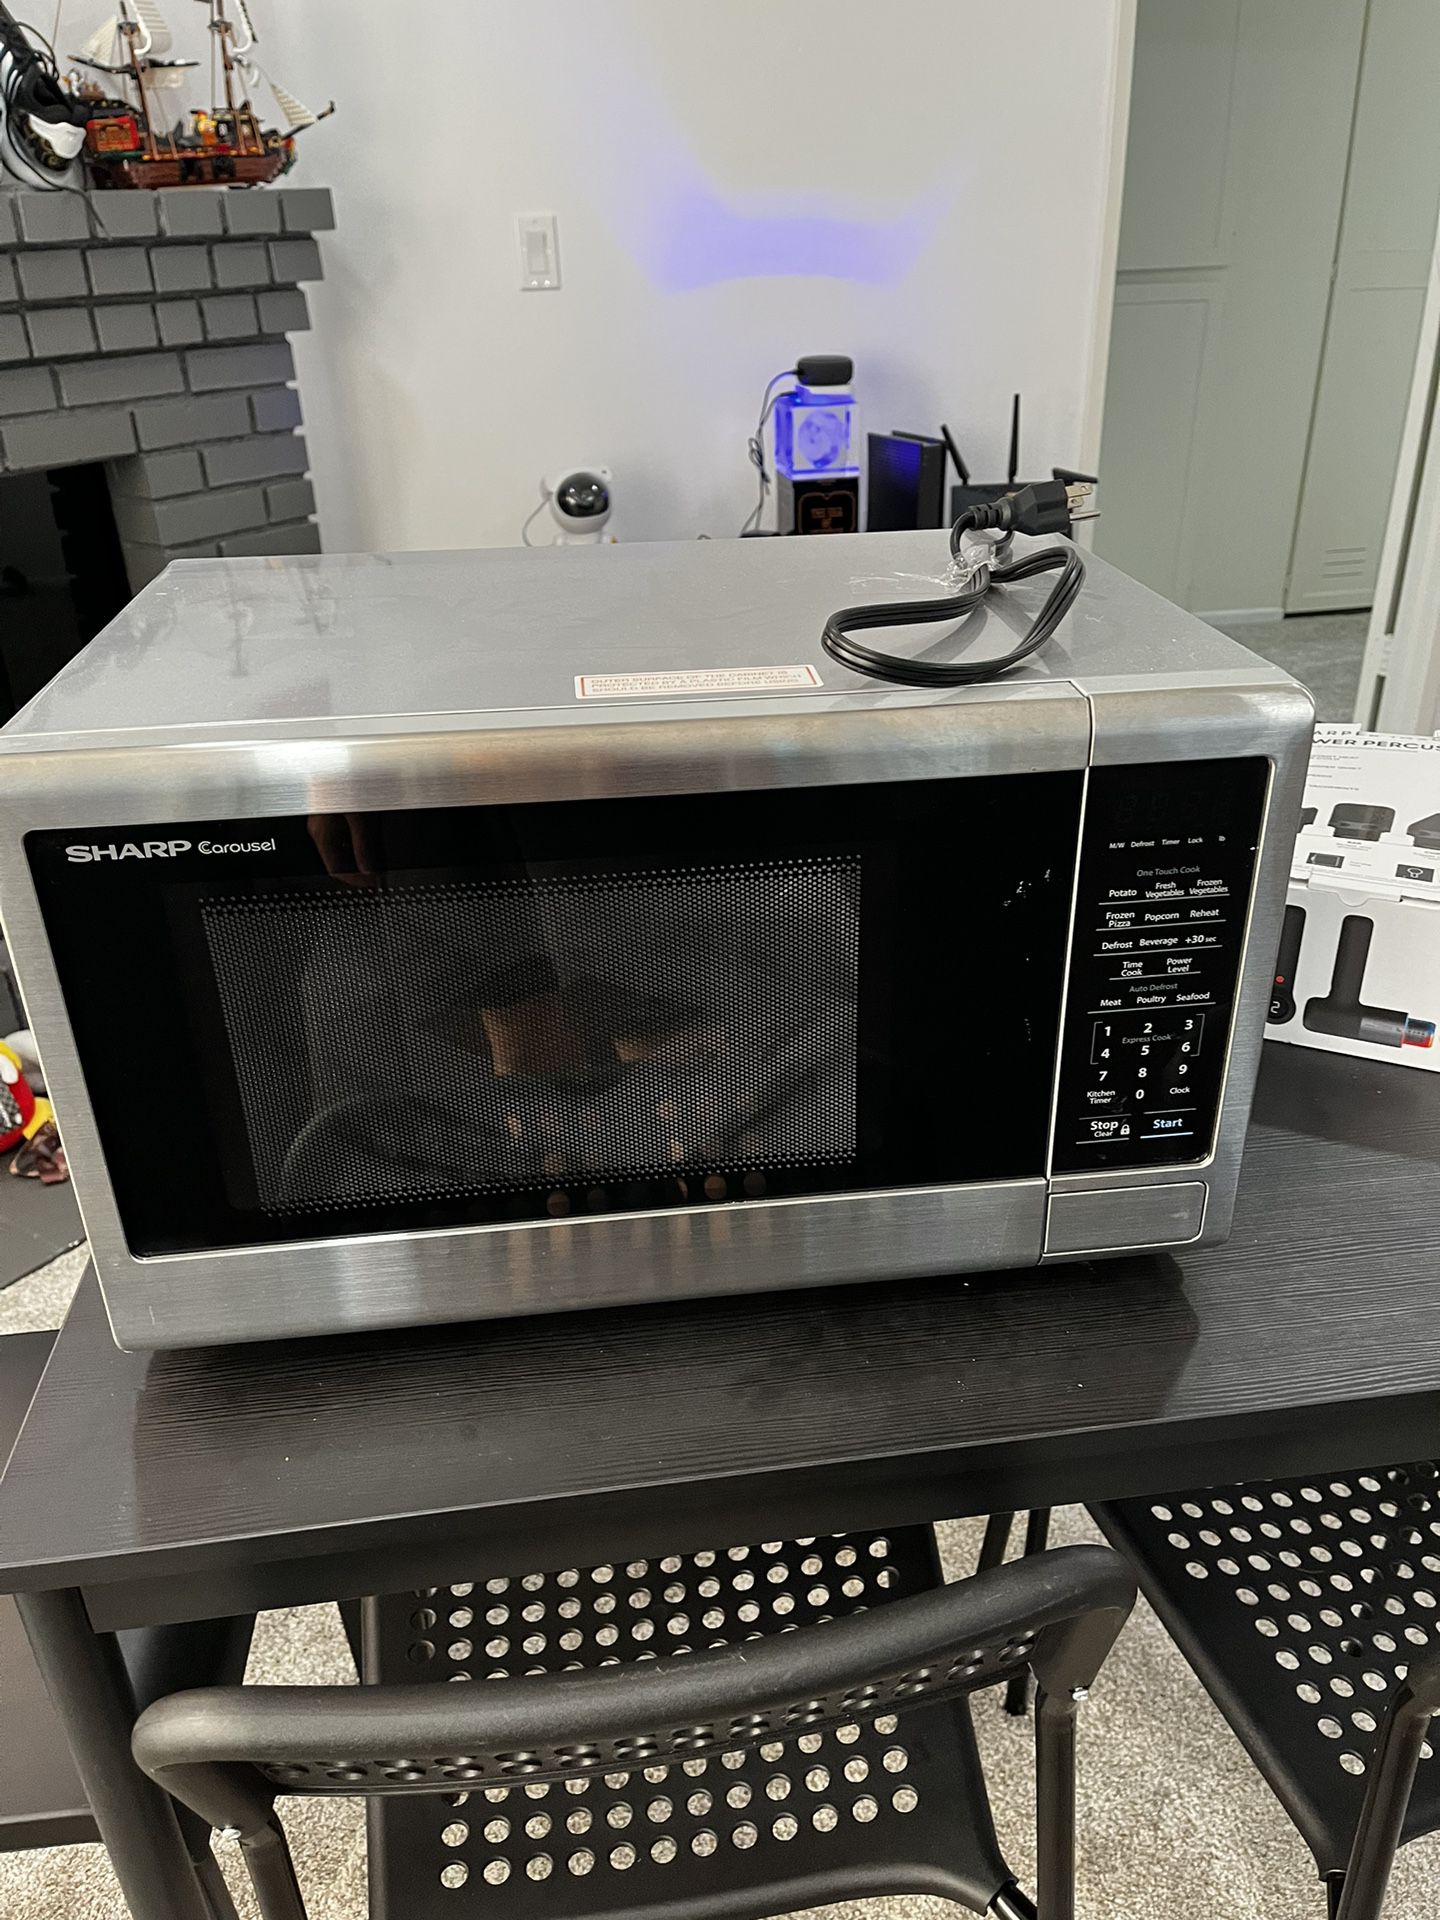 Microwave $50